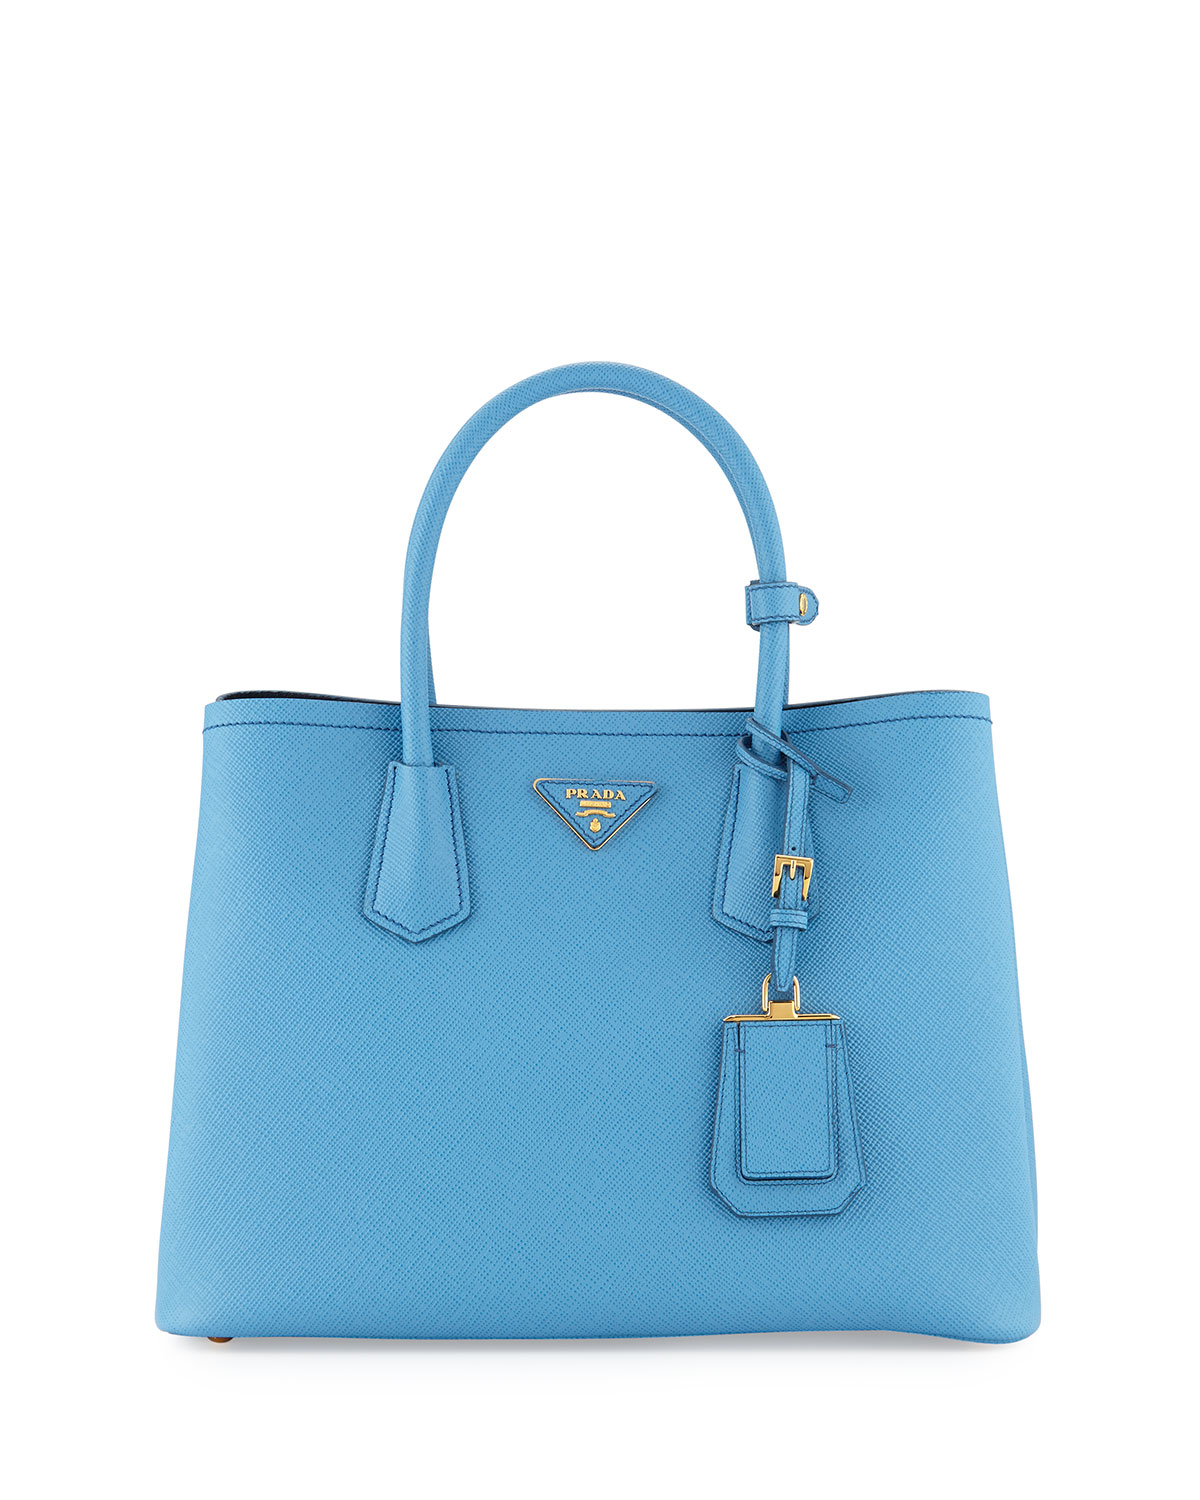 Prada Saffiano Cuir Double Small Tote Bag in Blue (MARE/BLUETTE ...